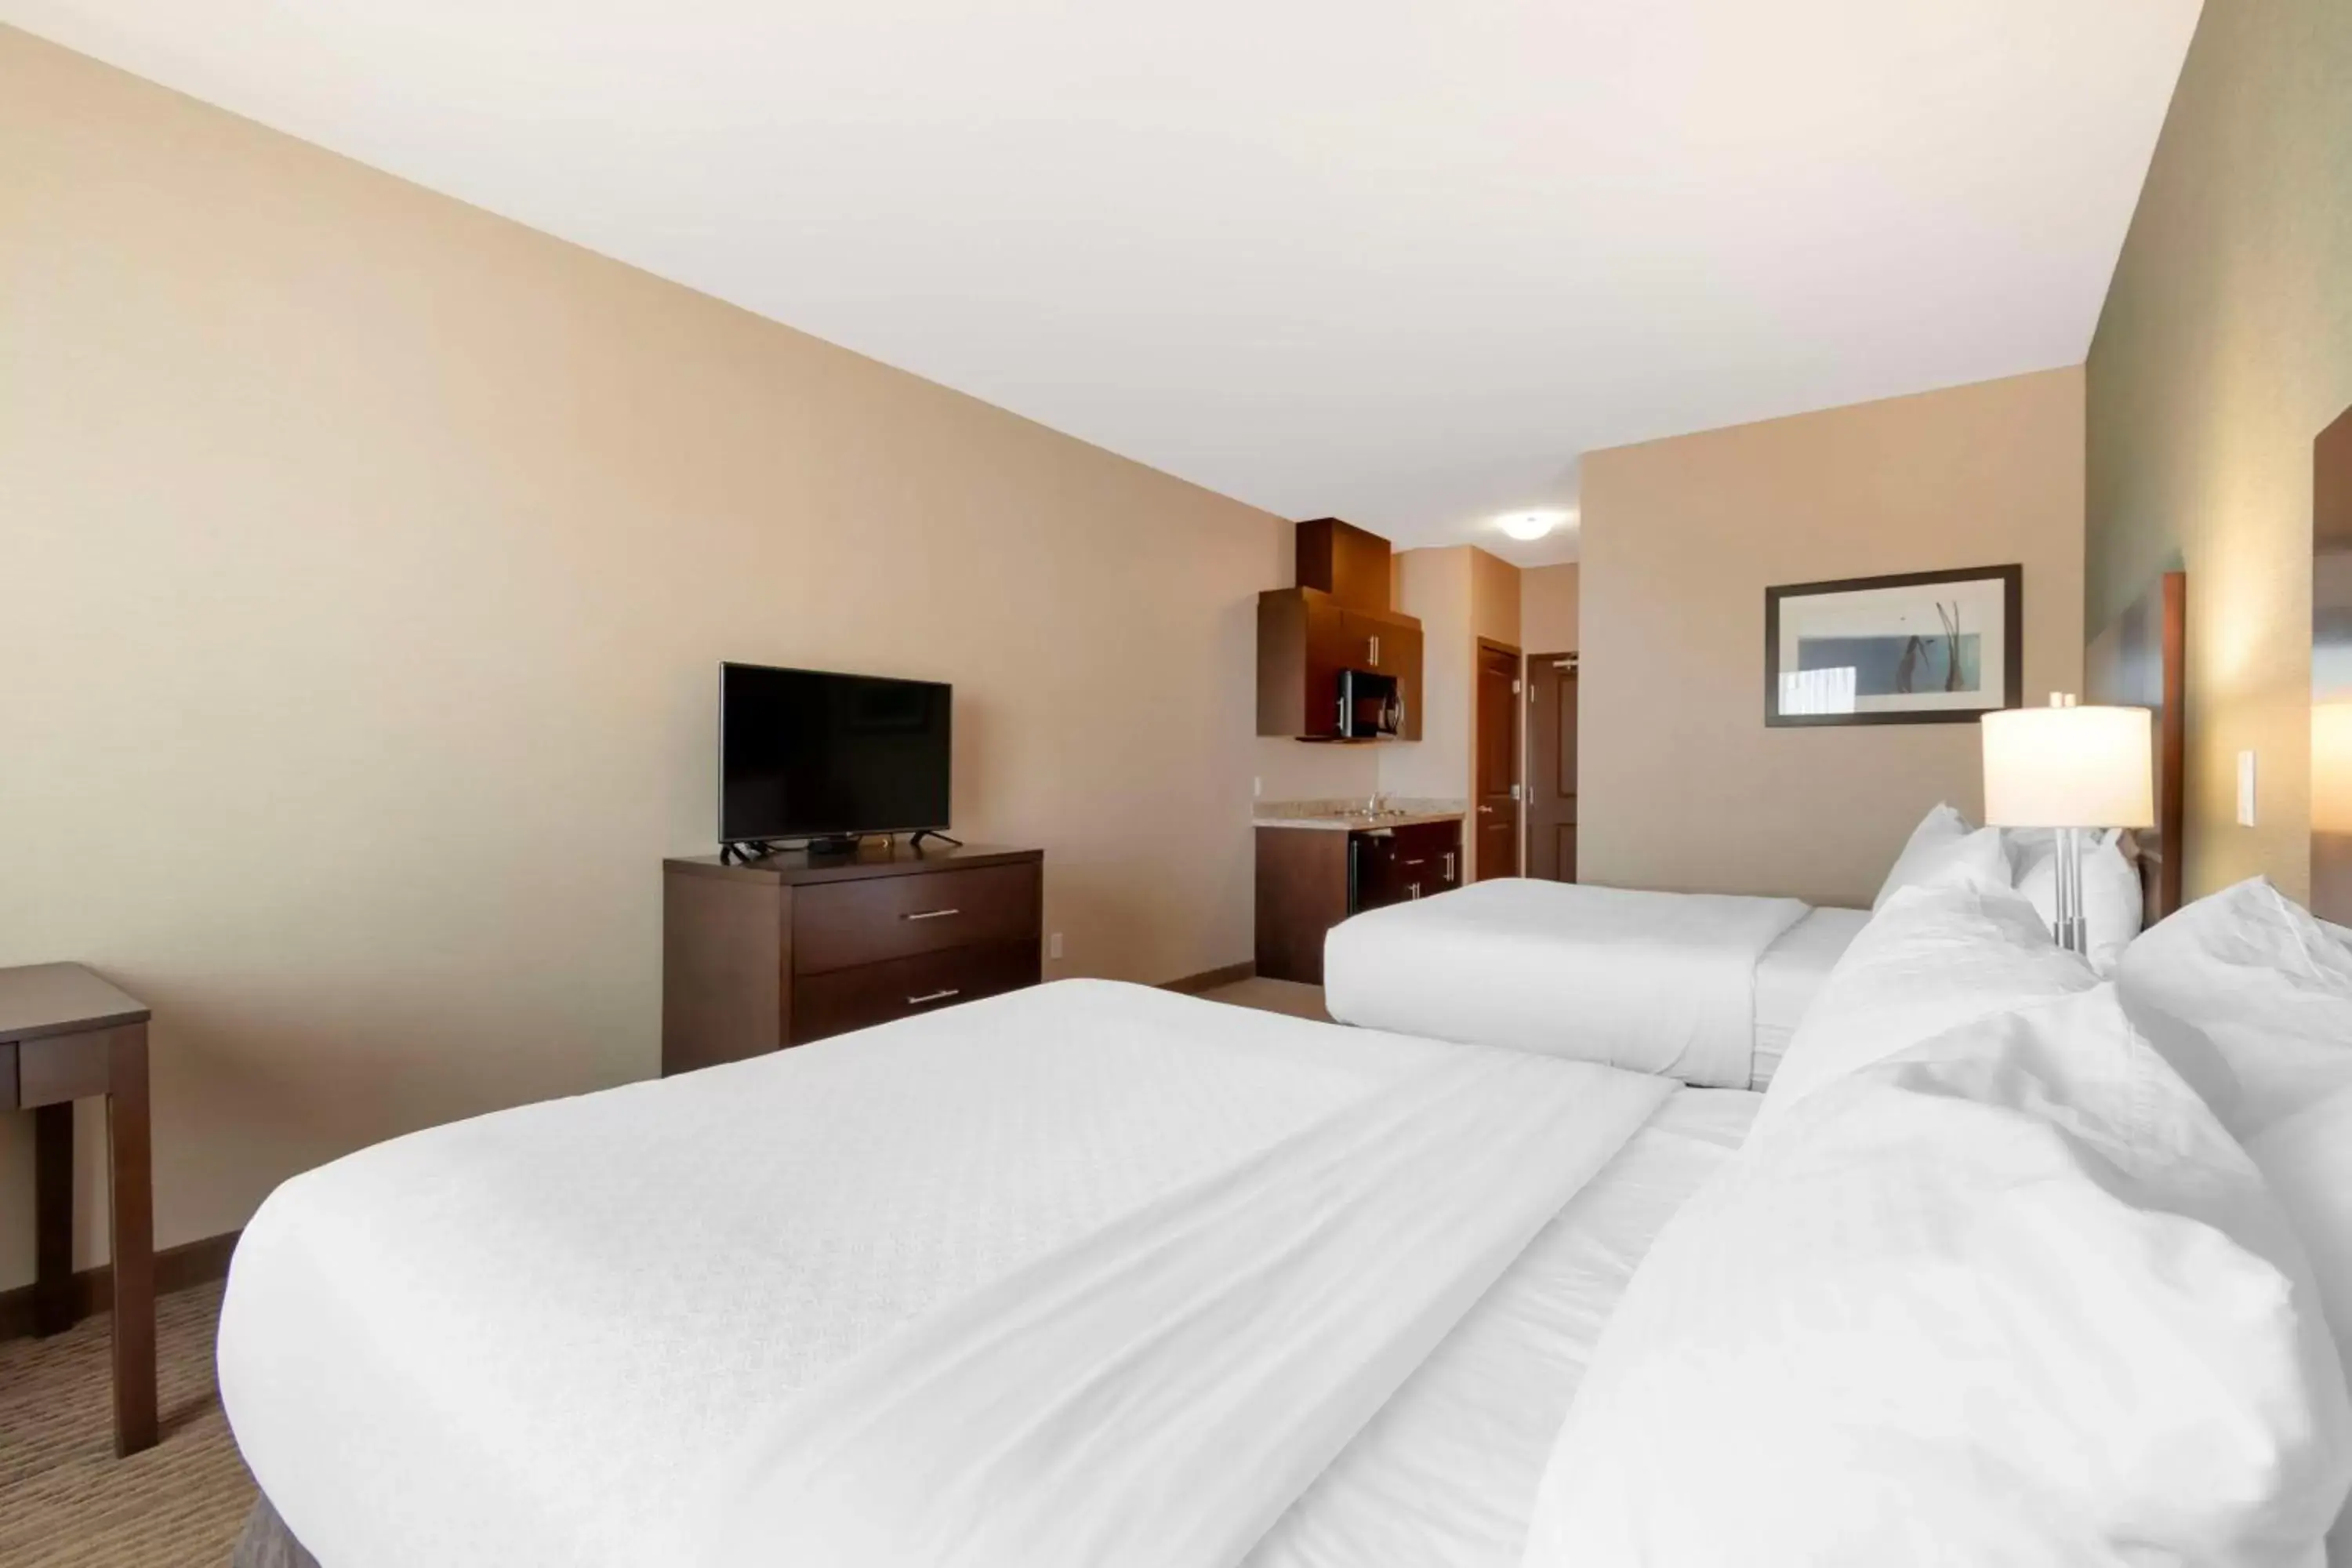 Bedroom, Bed in Best Western Plus Moosomin Hotel